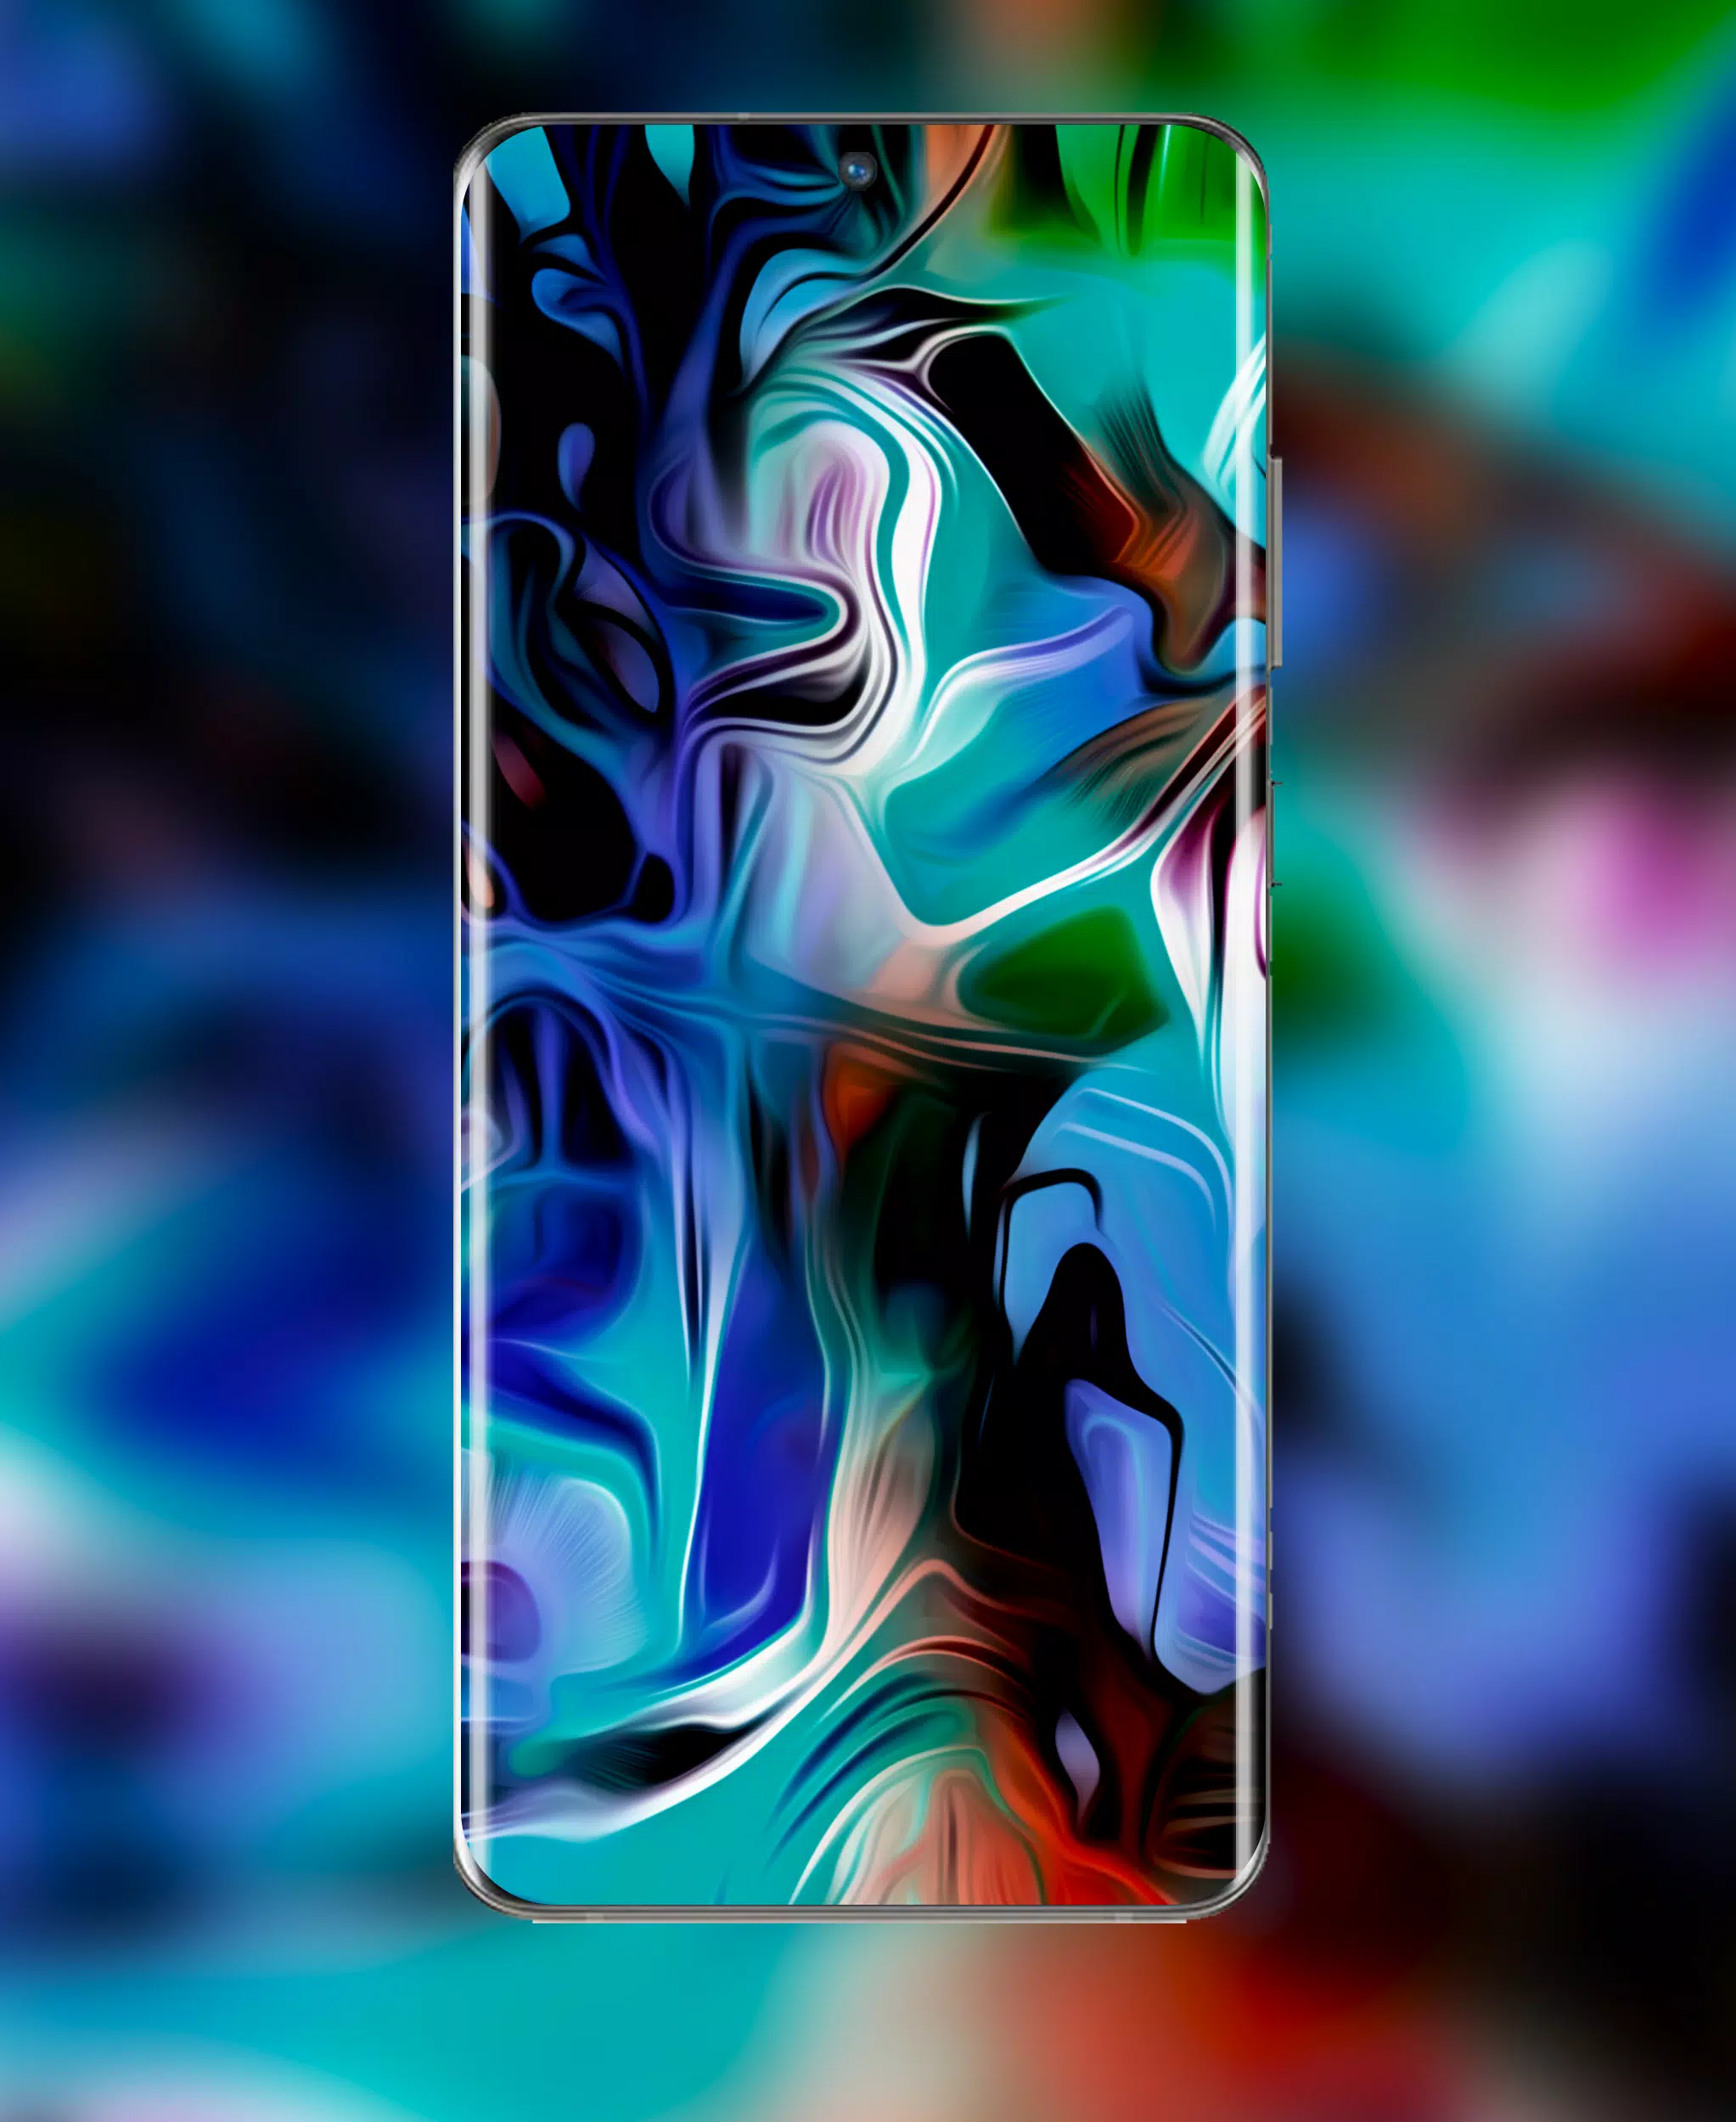 Tải về APK hình nền Galaxy S22 Ultra để có thể trải nghiệm và thưởng thức những hình nền độc đáo và ấn tượng của dòng điện thoại này. Thiết kế tinh tế cùng với độ phân giải cao, chất lượng hình ảnh sẽ được nâng cao đáng kể.